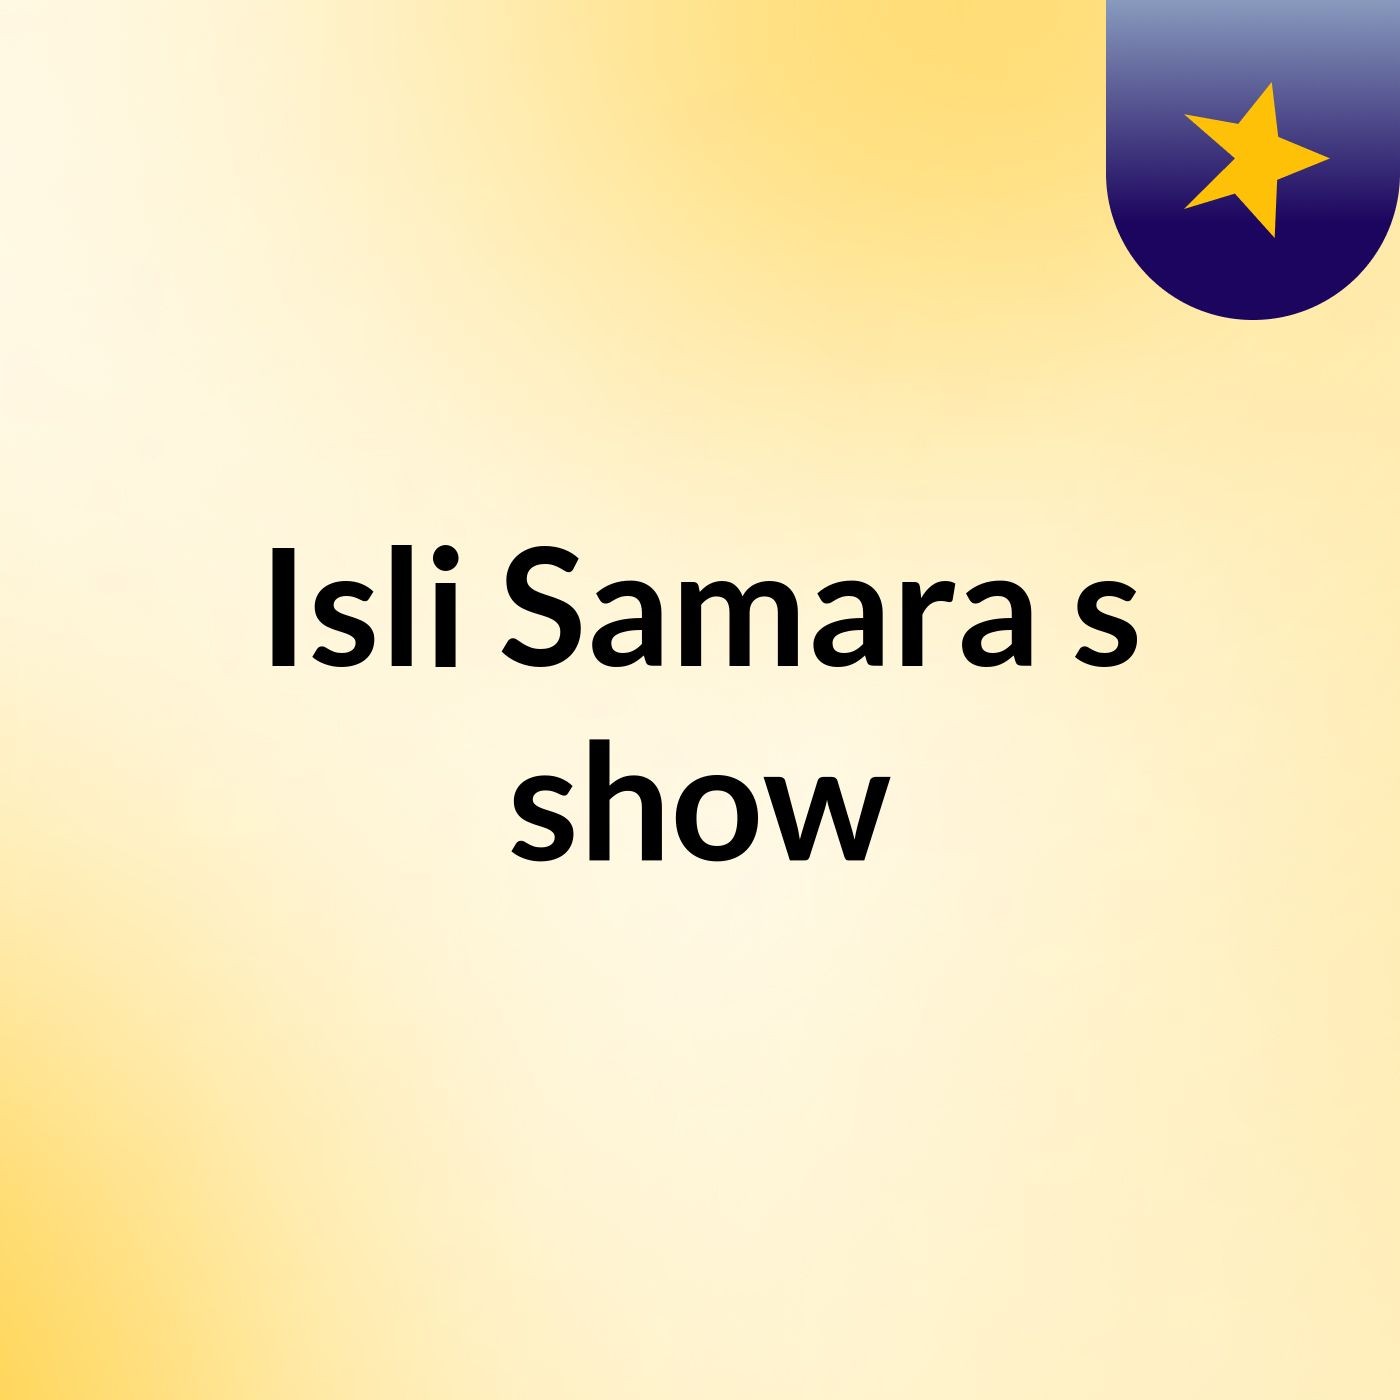 Isli Samara's show